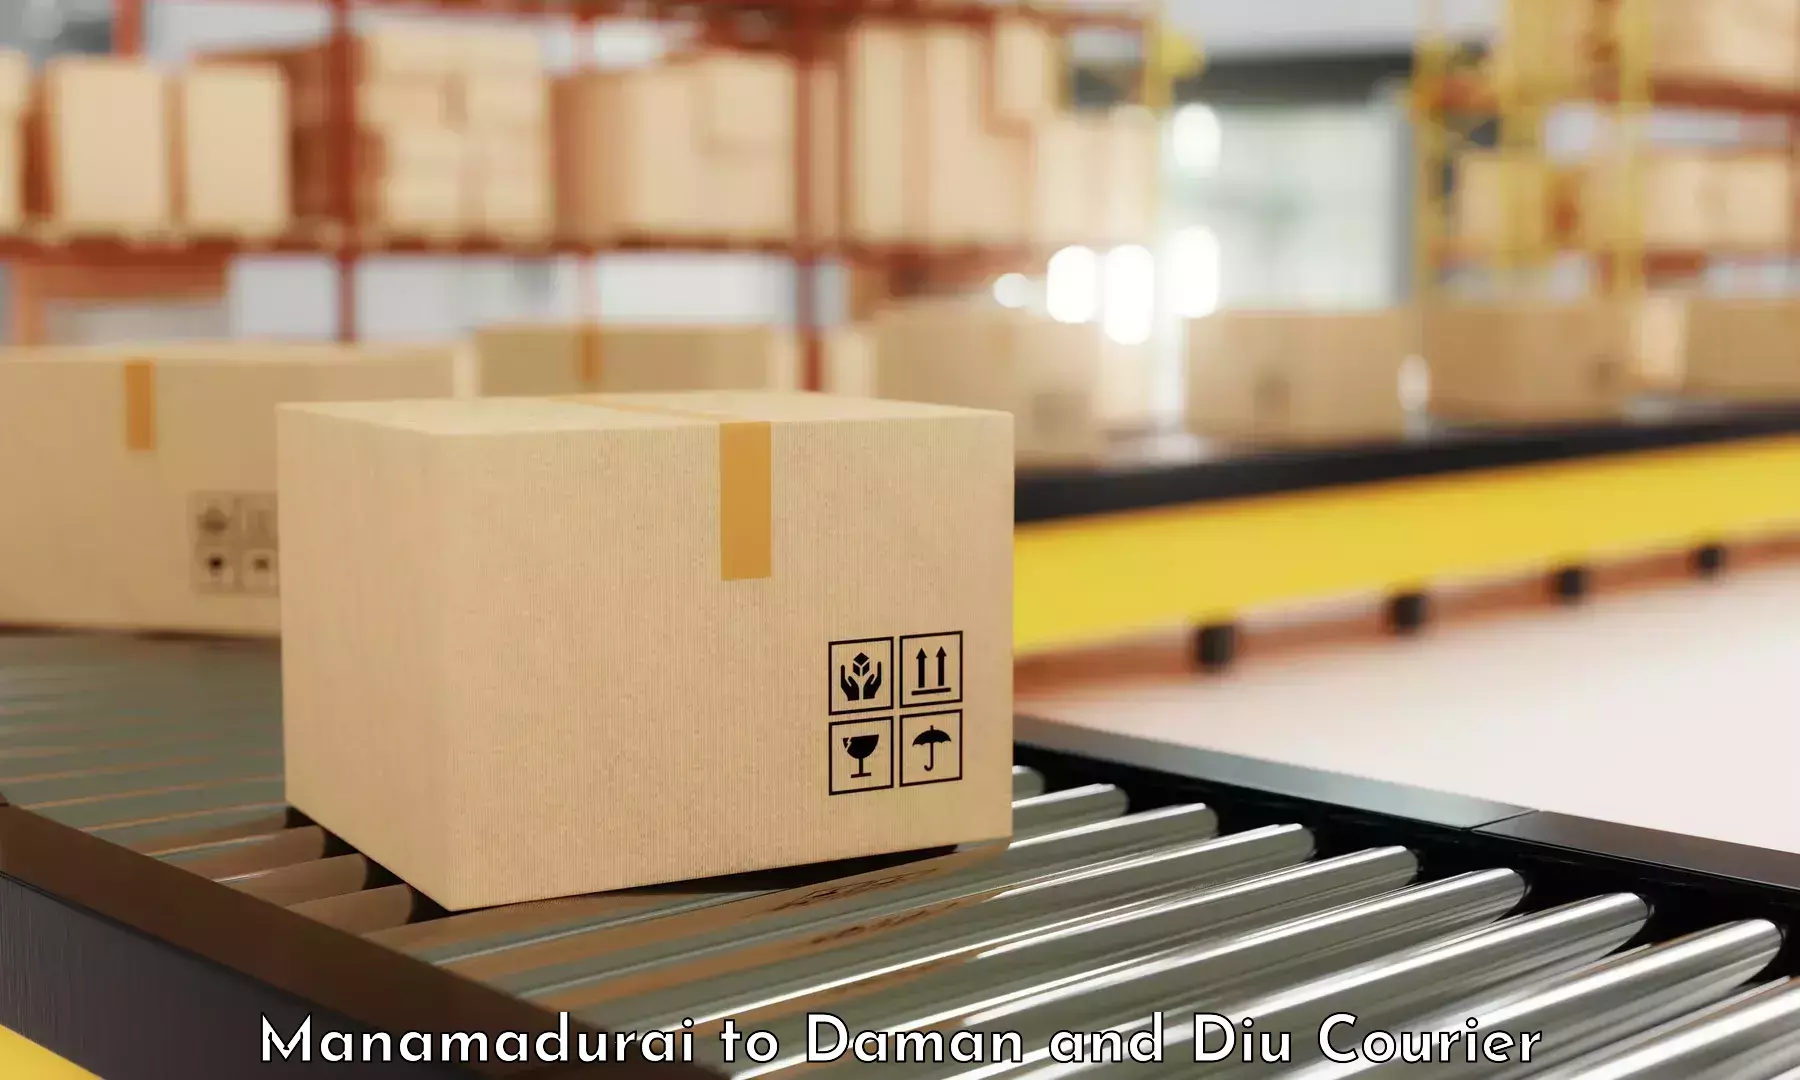 High-efficiency logistics Manamadurai to Daman and Diu